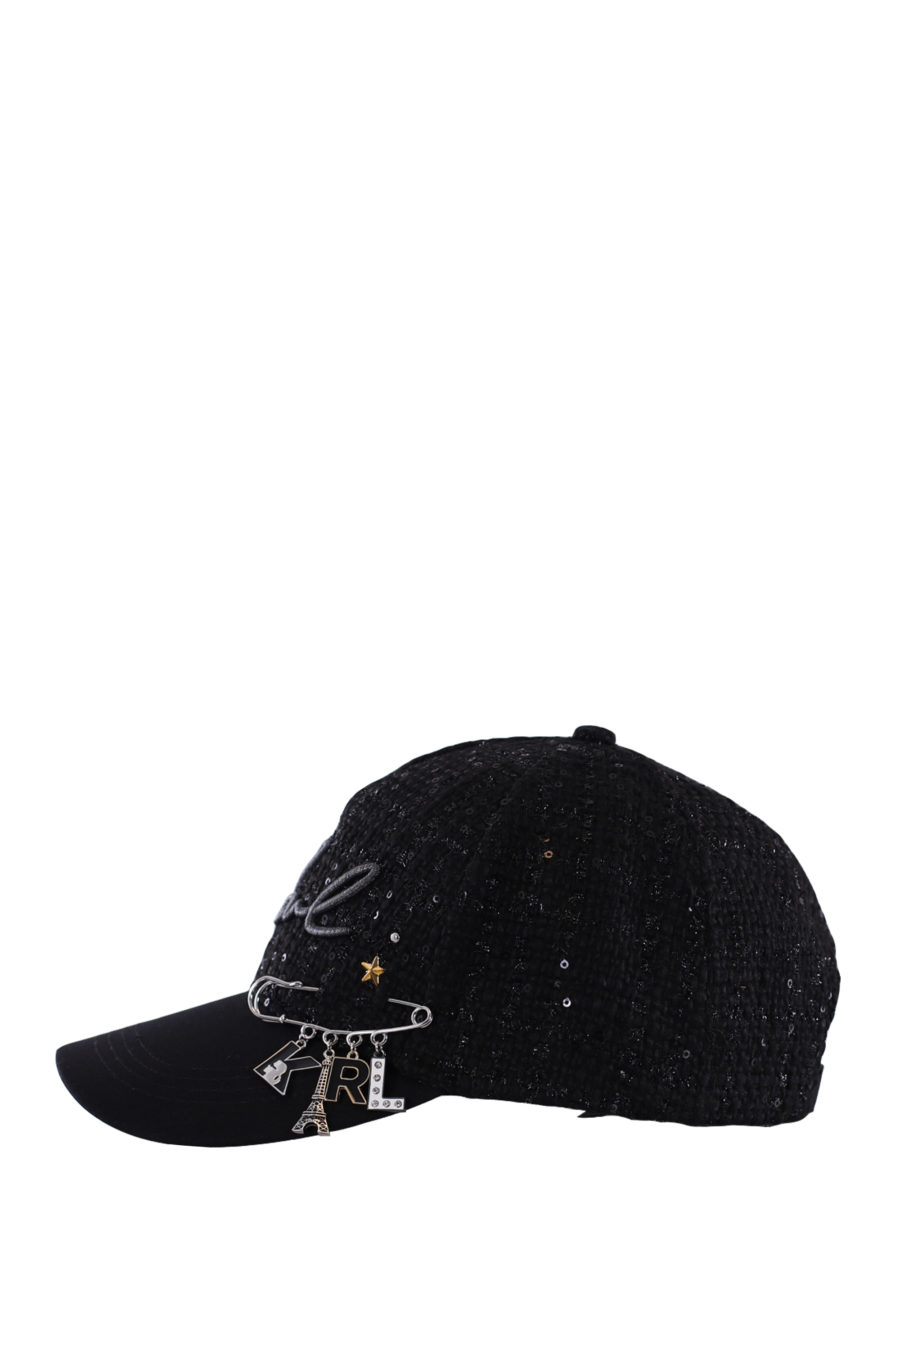 Gorra negra con pin de la marca - IMG 0207